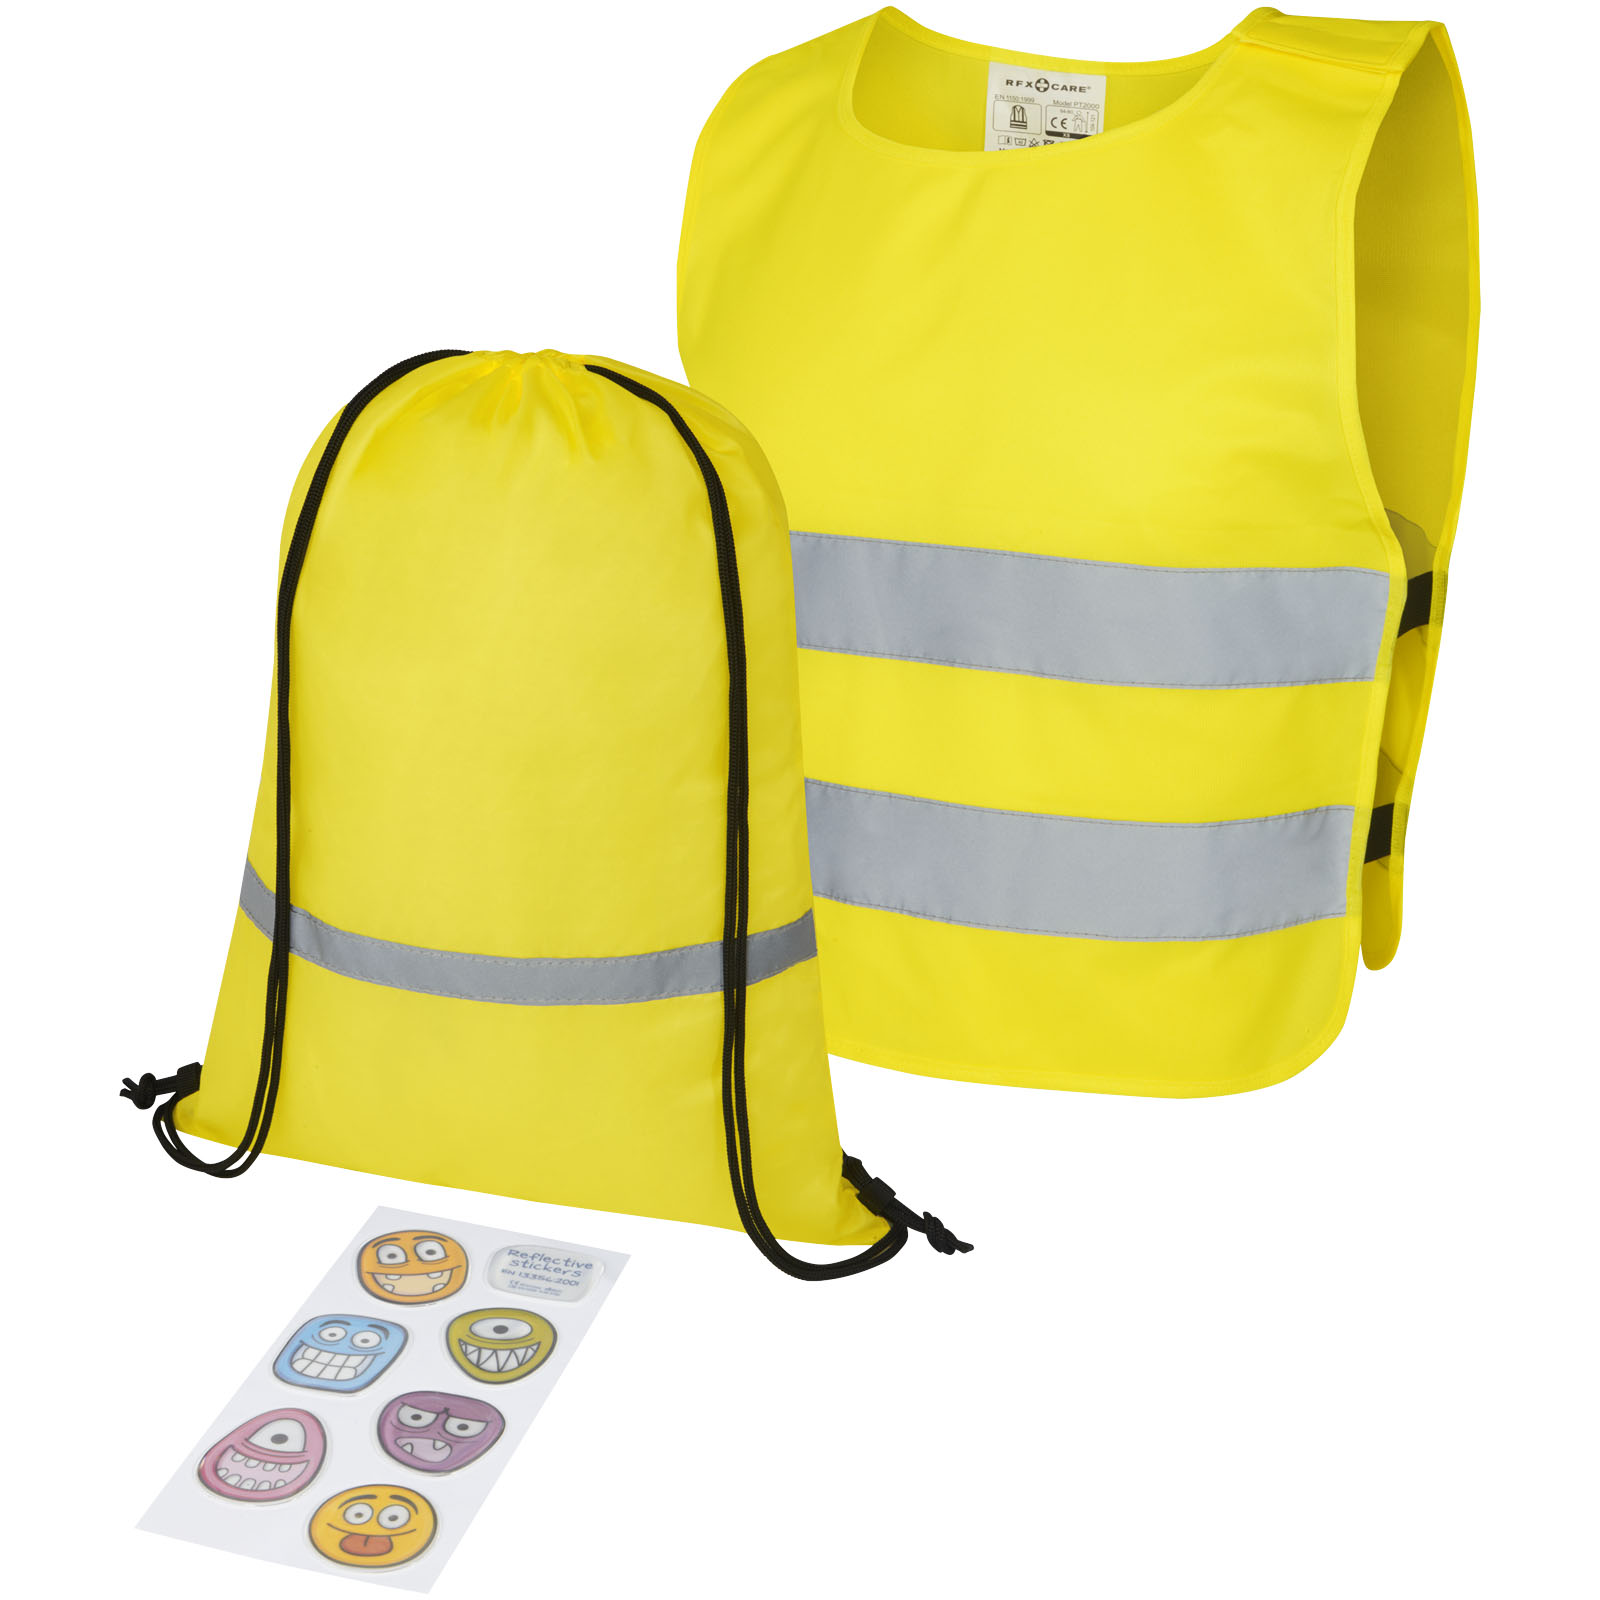 Gilet de sécurité jaune fluo Homologué 2 bandes personnalisable